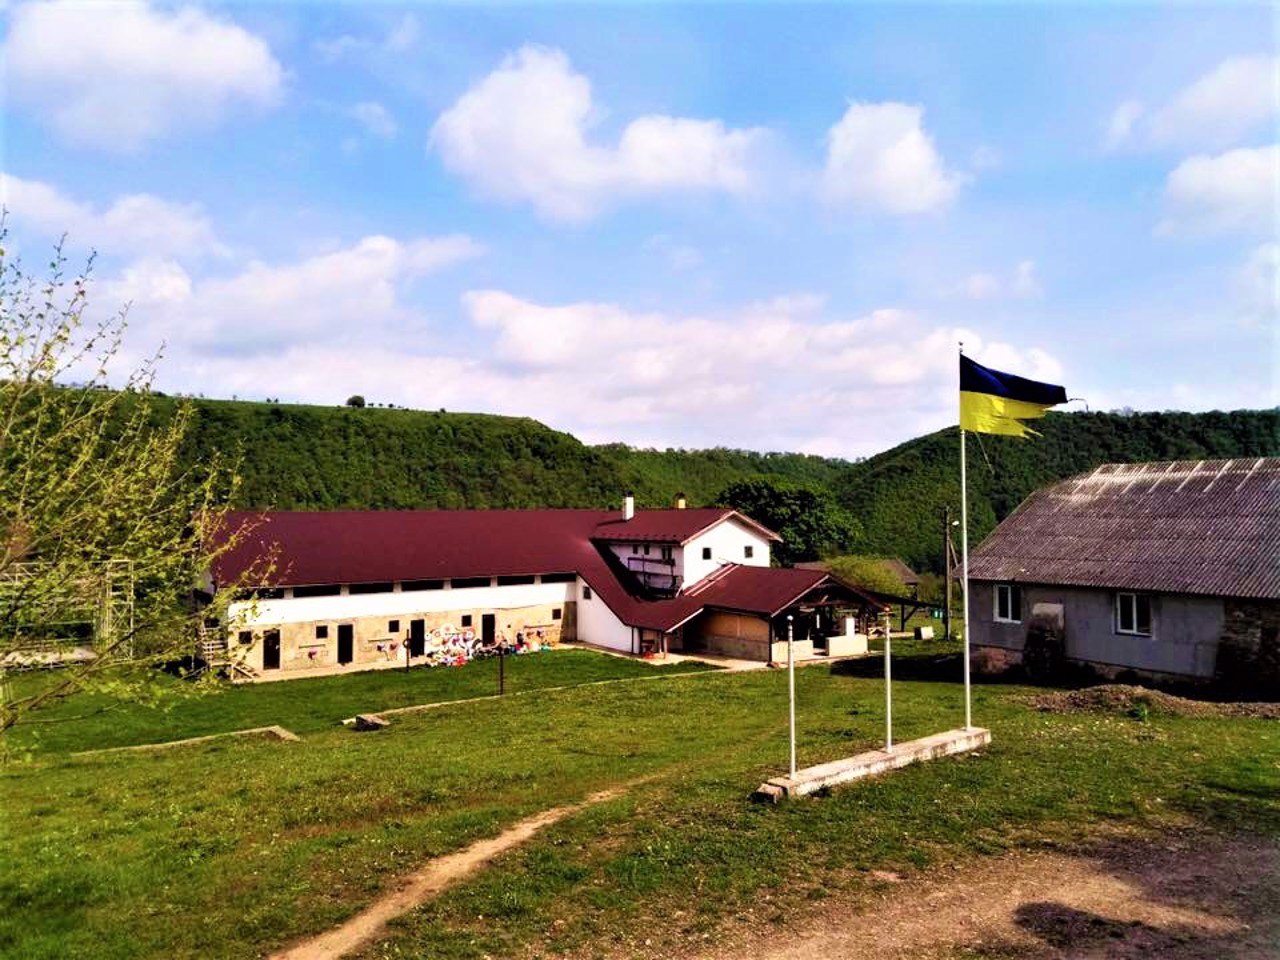 Unizh village